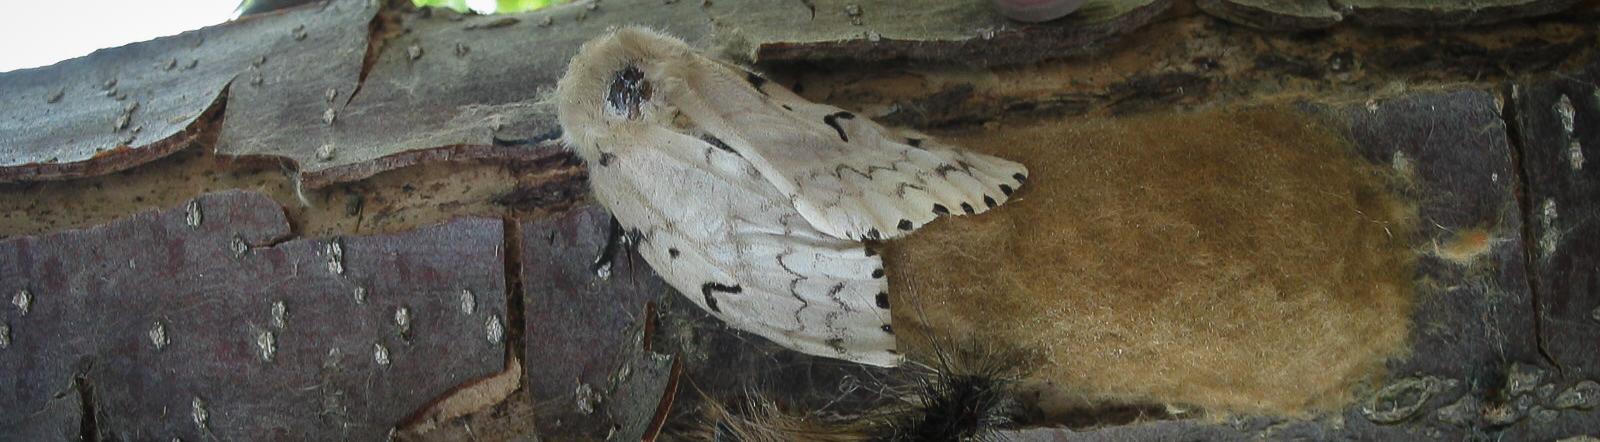 Gypsy moth female